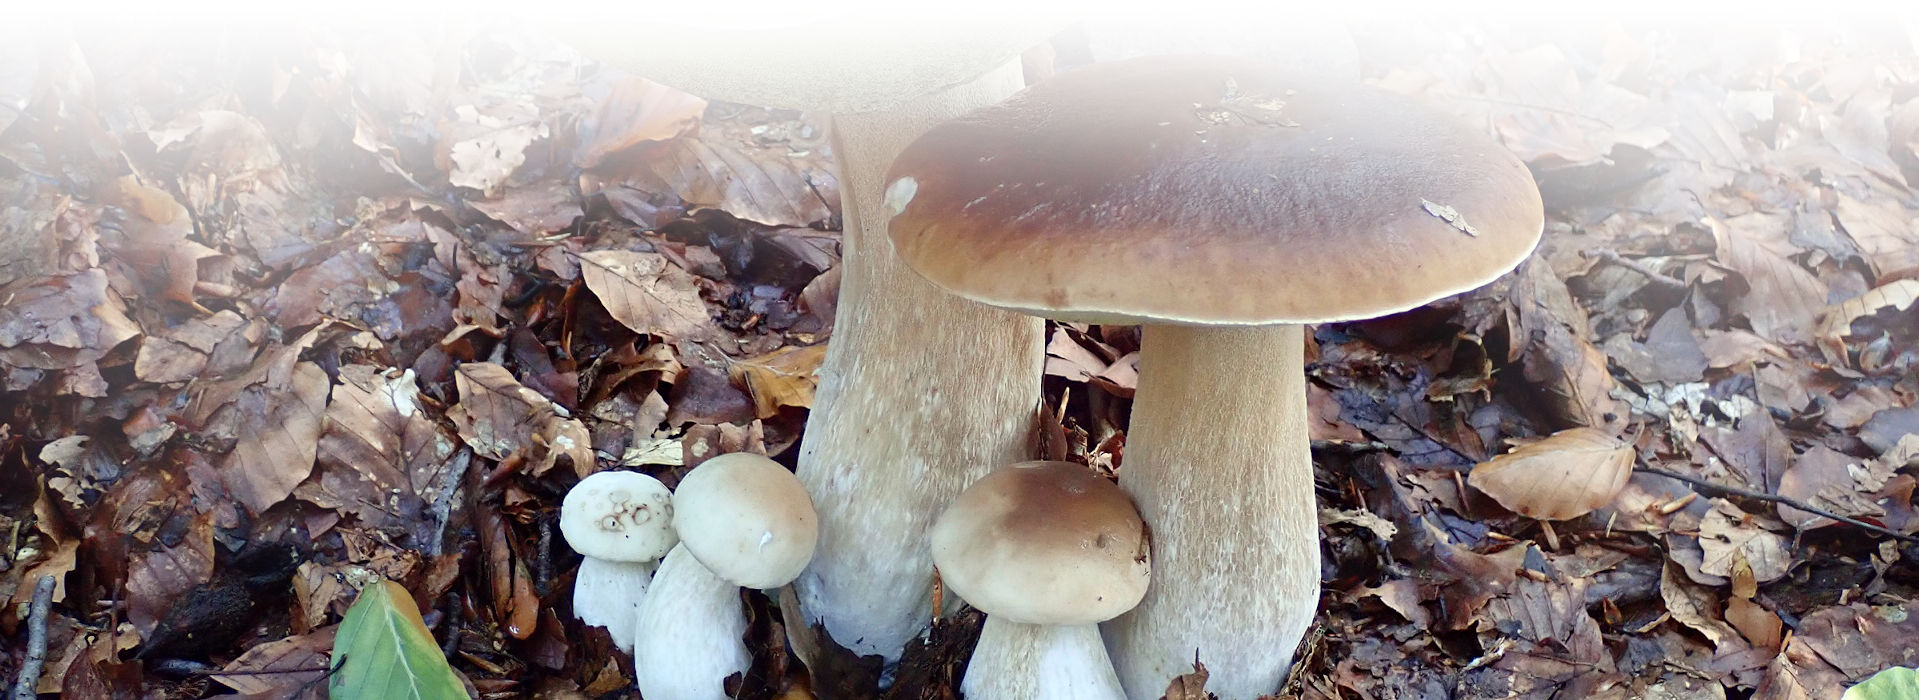 Eine Gruppe von unterschiedlich alten Pilzen der gleichen Art sprießt aus dem Waldboden, der mit braunem Laub bedeckt ist. Die Pilze haben einen hellen Stiel und eine hell- bis dunkelbraun gefärbte Kappe.